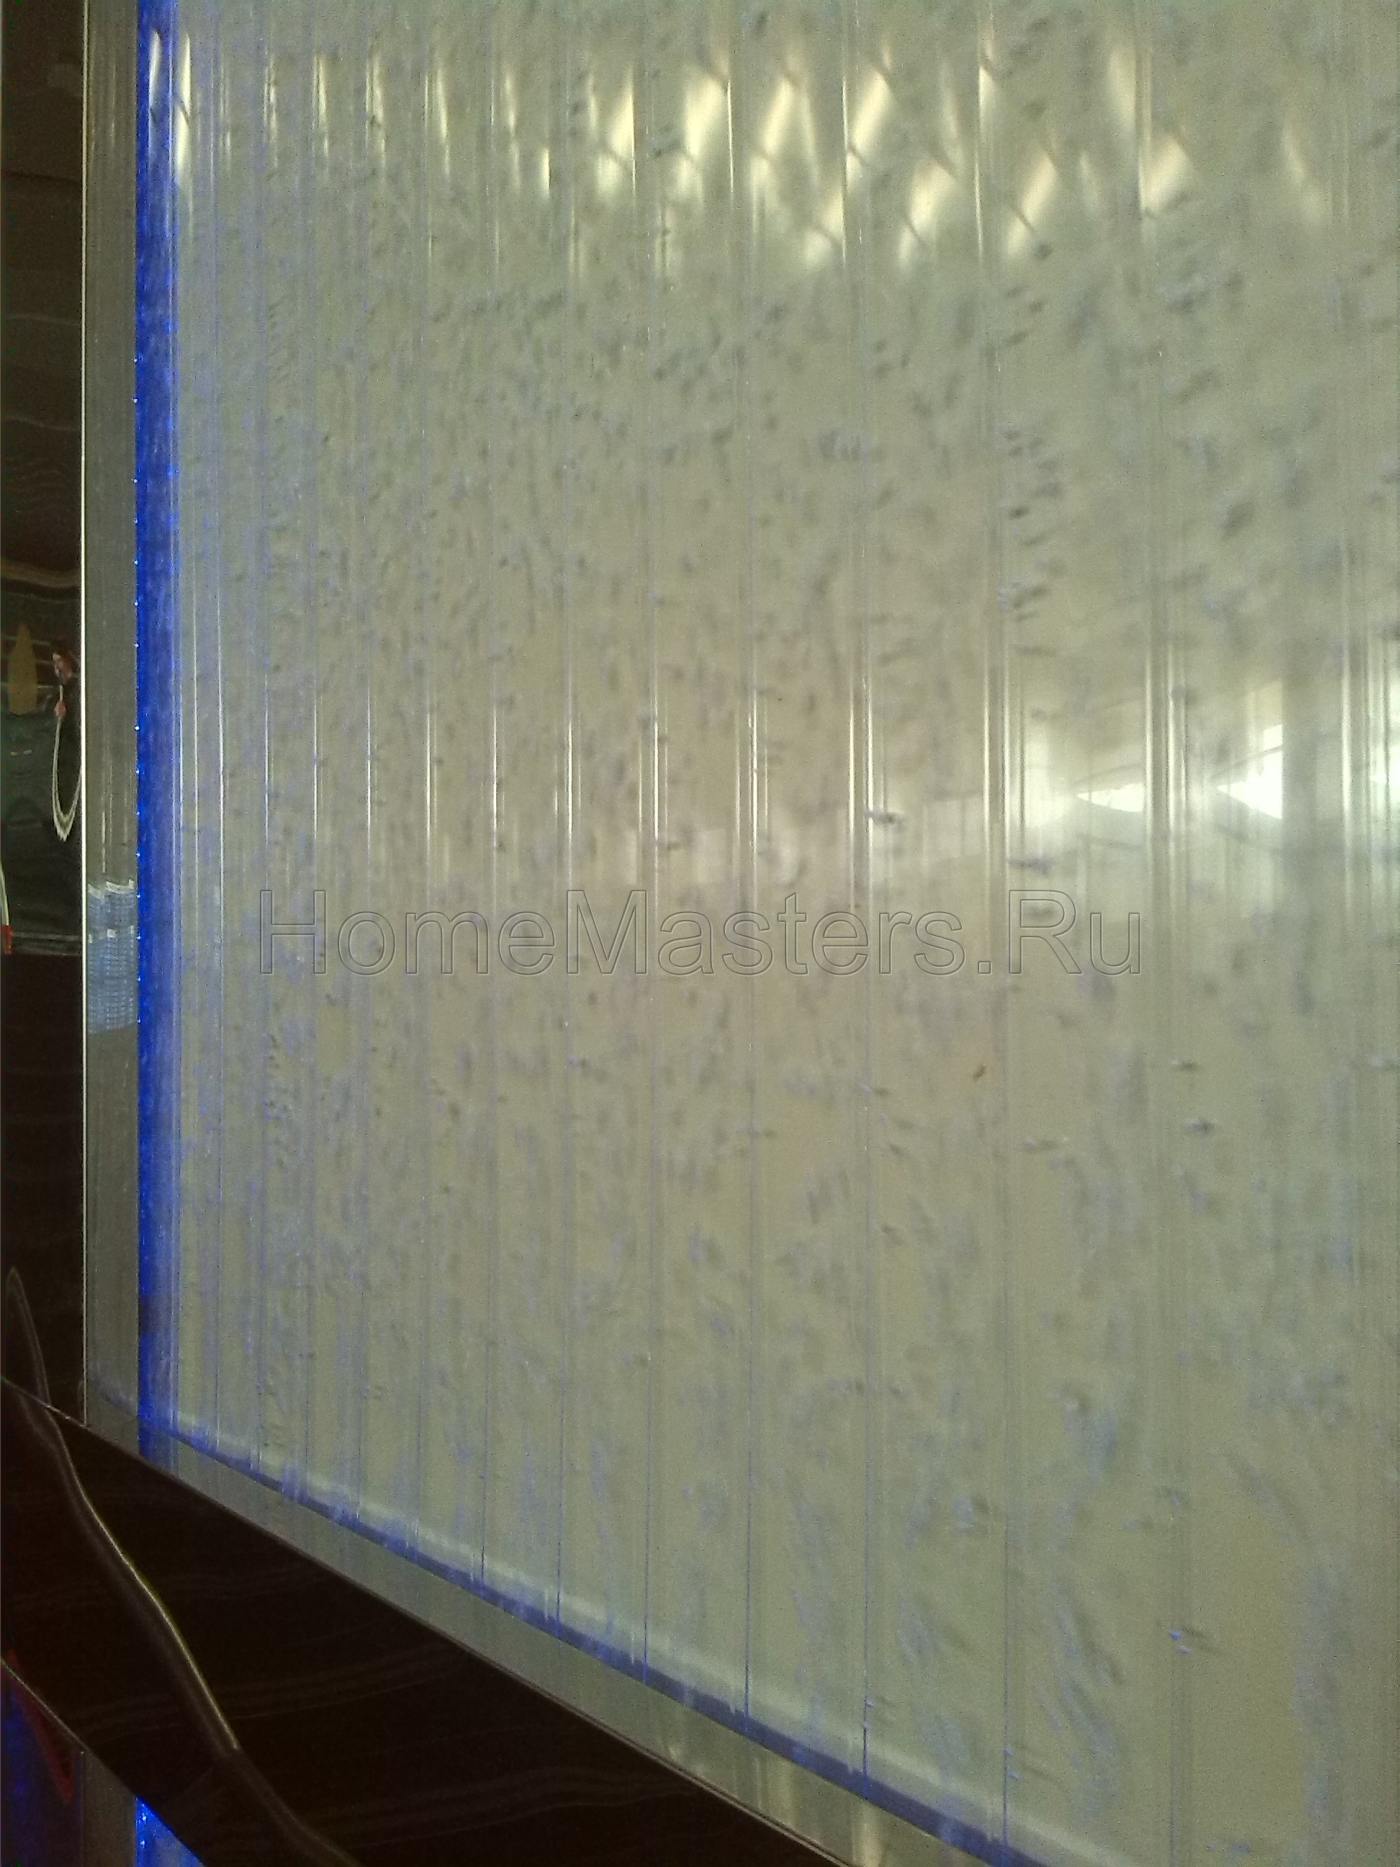 Пузырьковая панель своими руками. Bubble panel DIY.